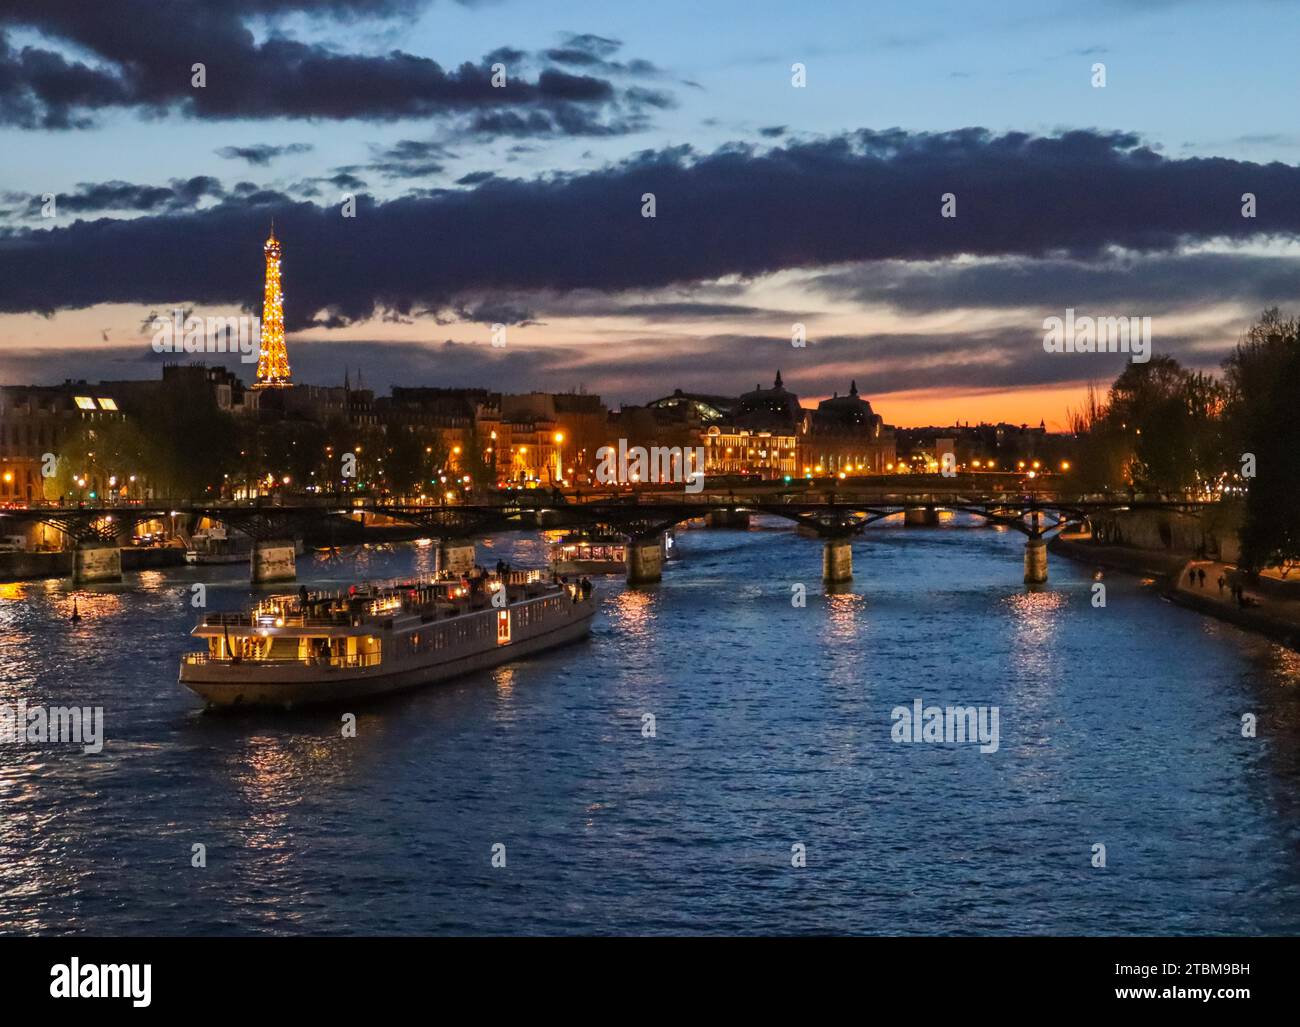 France, avril 03 2019. Belle nuit Paris, tour Eiffel étincelante, pont Pont des Arts sur la Seine et bateaux touristiques Banque D'Images